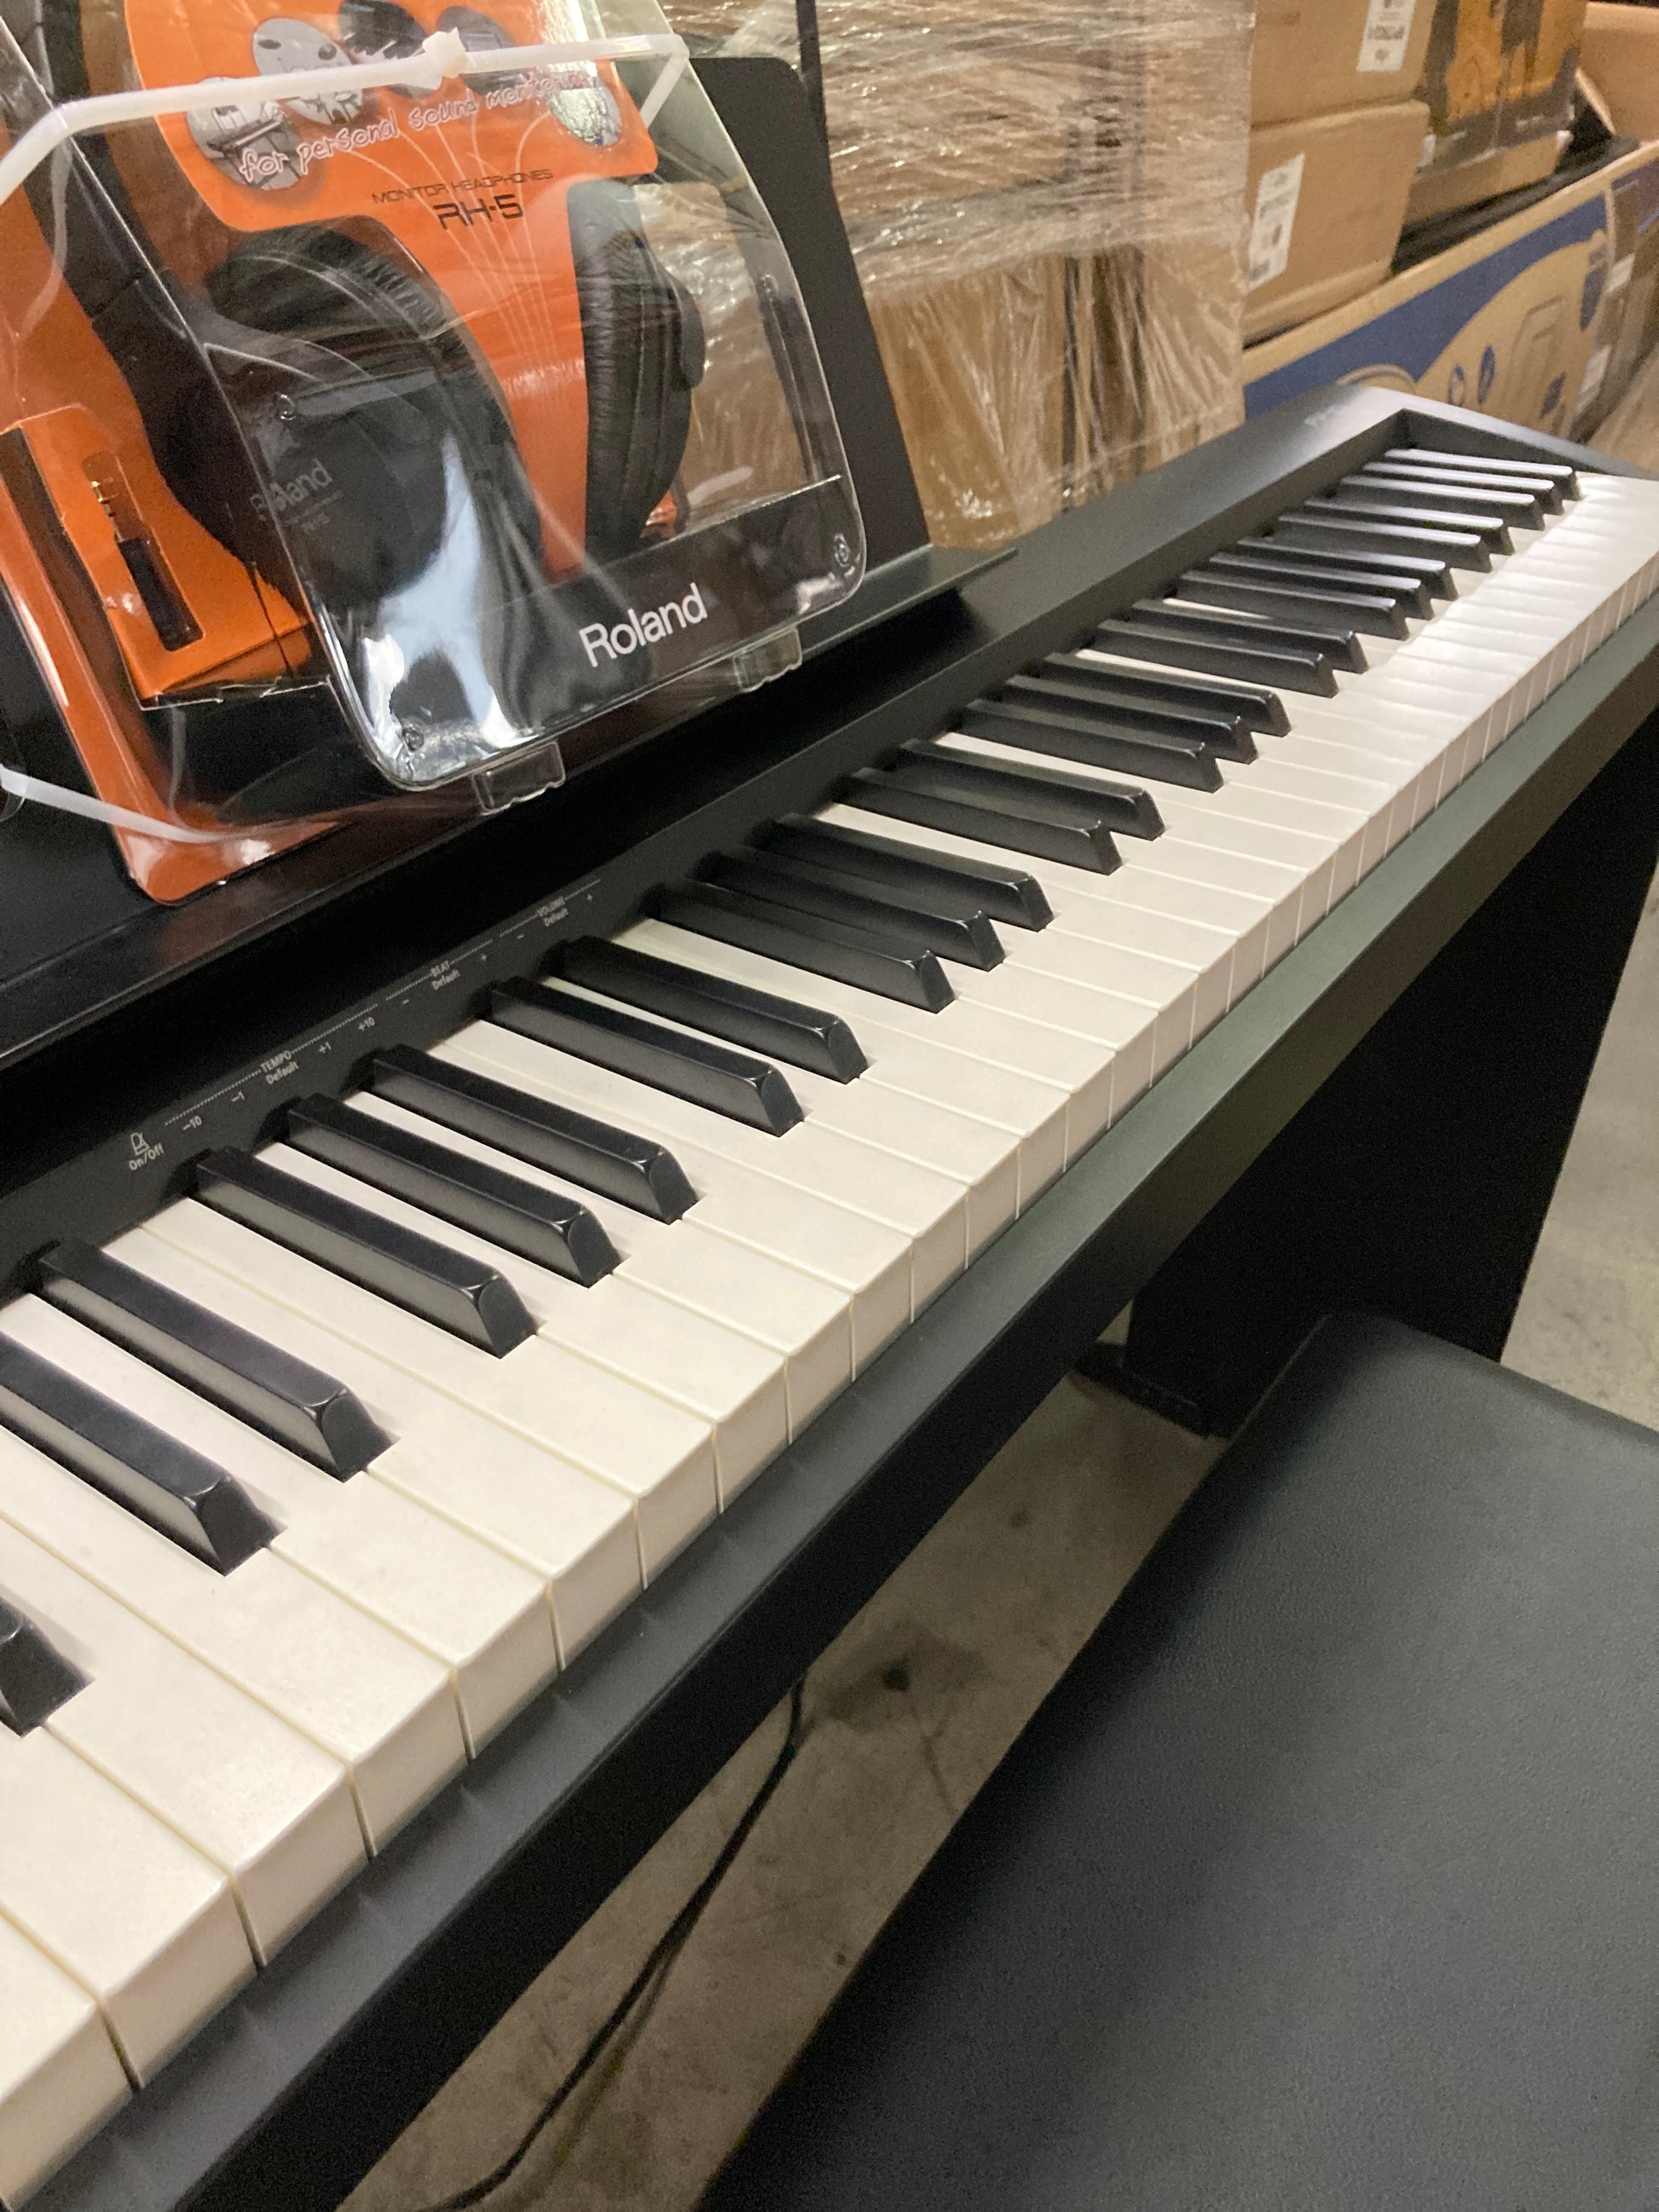 Roland FRP-1 Digital Piano Bundle - Retail $799 Default Title